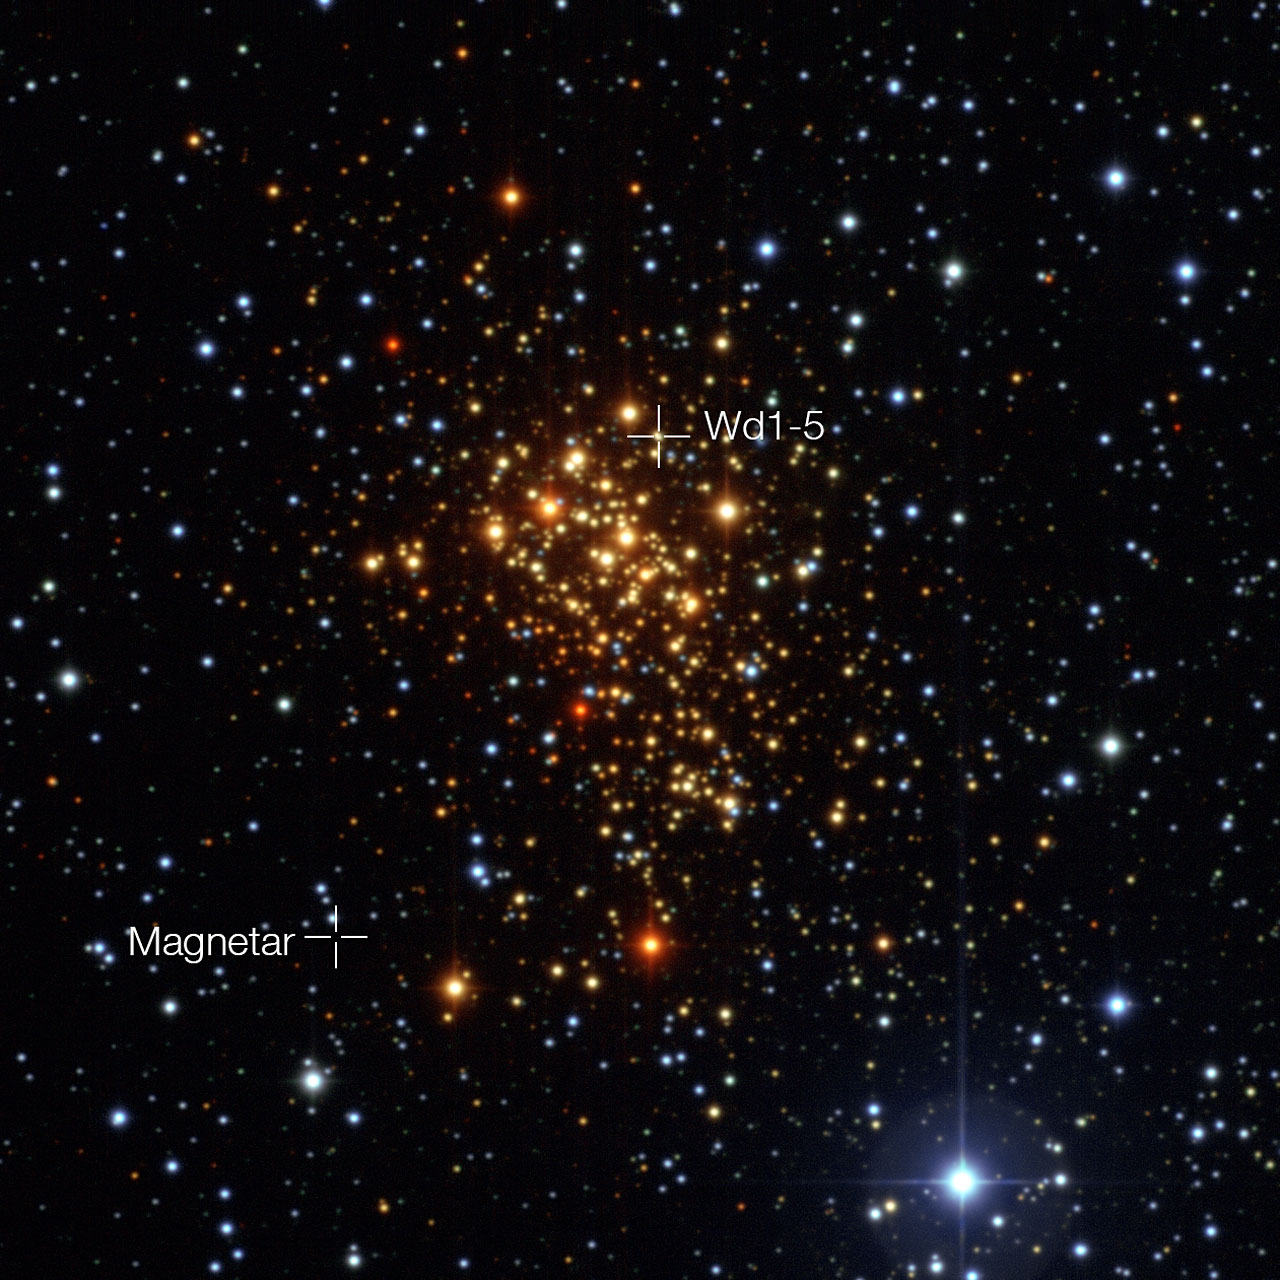 Esta imagem do enxame estelar jovem Westerlund 1 foi obtida com o instrumento Wide Field Imager montado no telescópio MPG/ESO de 2,2 metros, no Observatório de La Silla do ESO, no Chile. Apesar da maioria das estrelas do enxame serem supergigantes azuis quentes, na imagem aparecem avermelhadas porque estamos a observá-las através de poeira e gás interestelar. Astrónomos europeus demonstraram, pela primeira vez, que esta estrela magnética - um tipo invulgar de estrela de neutrões com um campo magnético extremamente poderoso - se formou, muito provavelmente, num sistema estelar binário. A descoberta da anterior companheira (Westerlund 1-5) da estrela magnética num local diferente do enxame, ajuda a resolver o mistério de como é que uma estrela que começou por possuir uma massa tão elevada pôde dar origem a uma estrela magnética, em vez de colapsar sob a forma de um buraco negro.